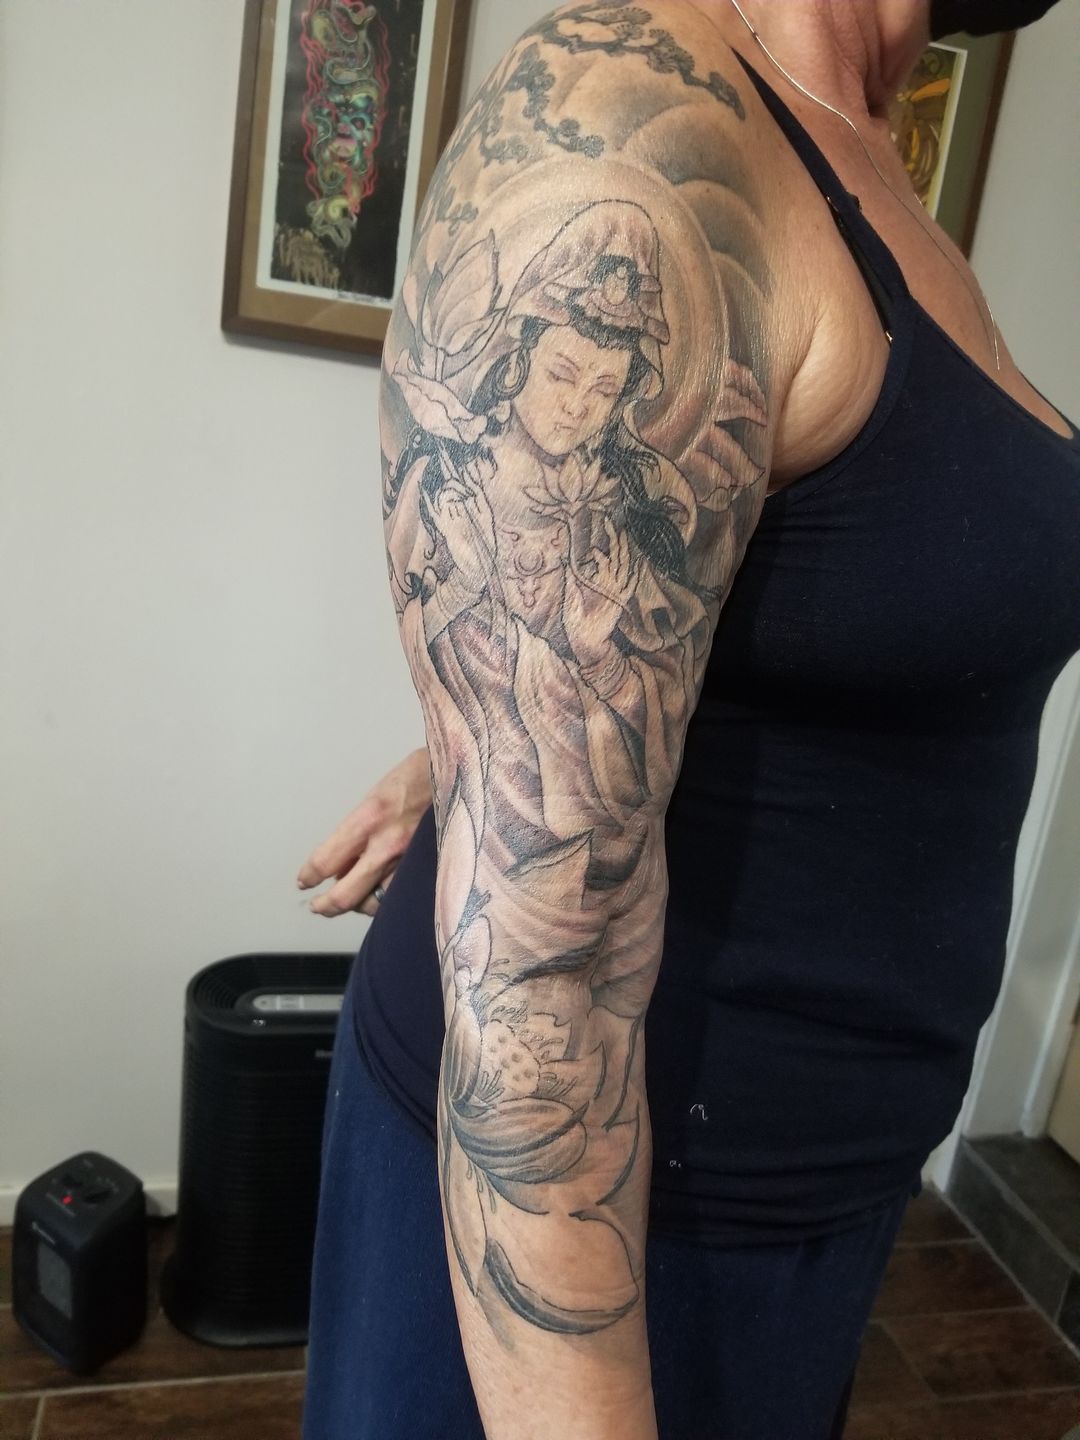 Tara's Tattoo - Aries by SkylaStarDreamer on DeviantArt